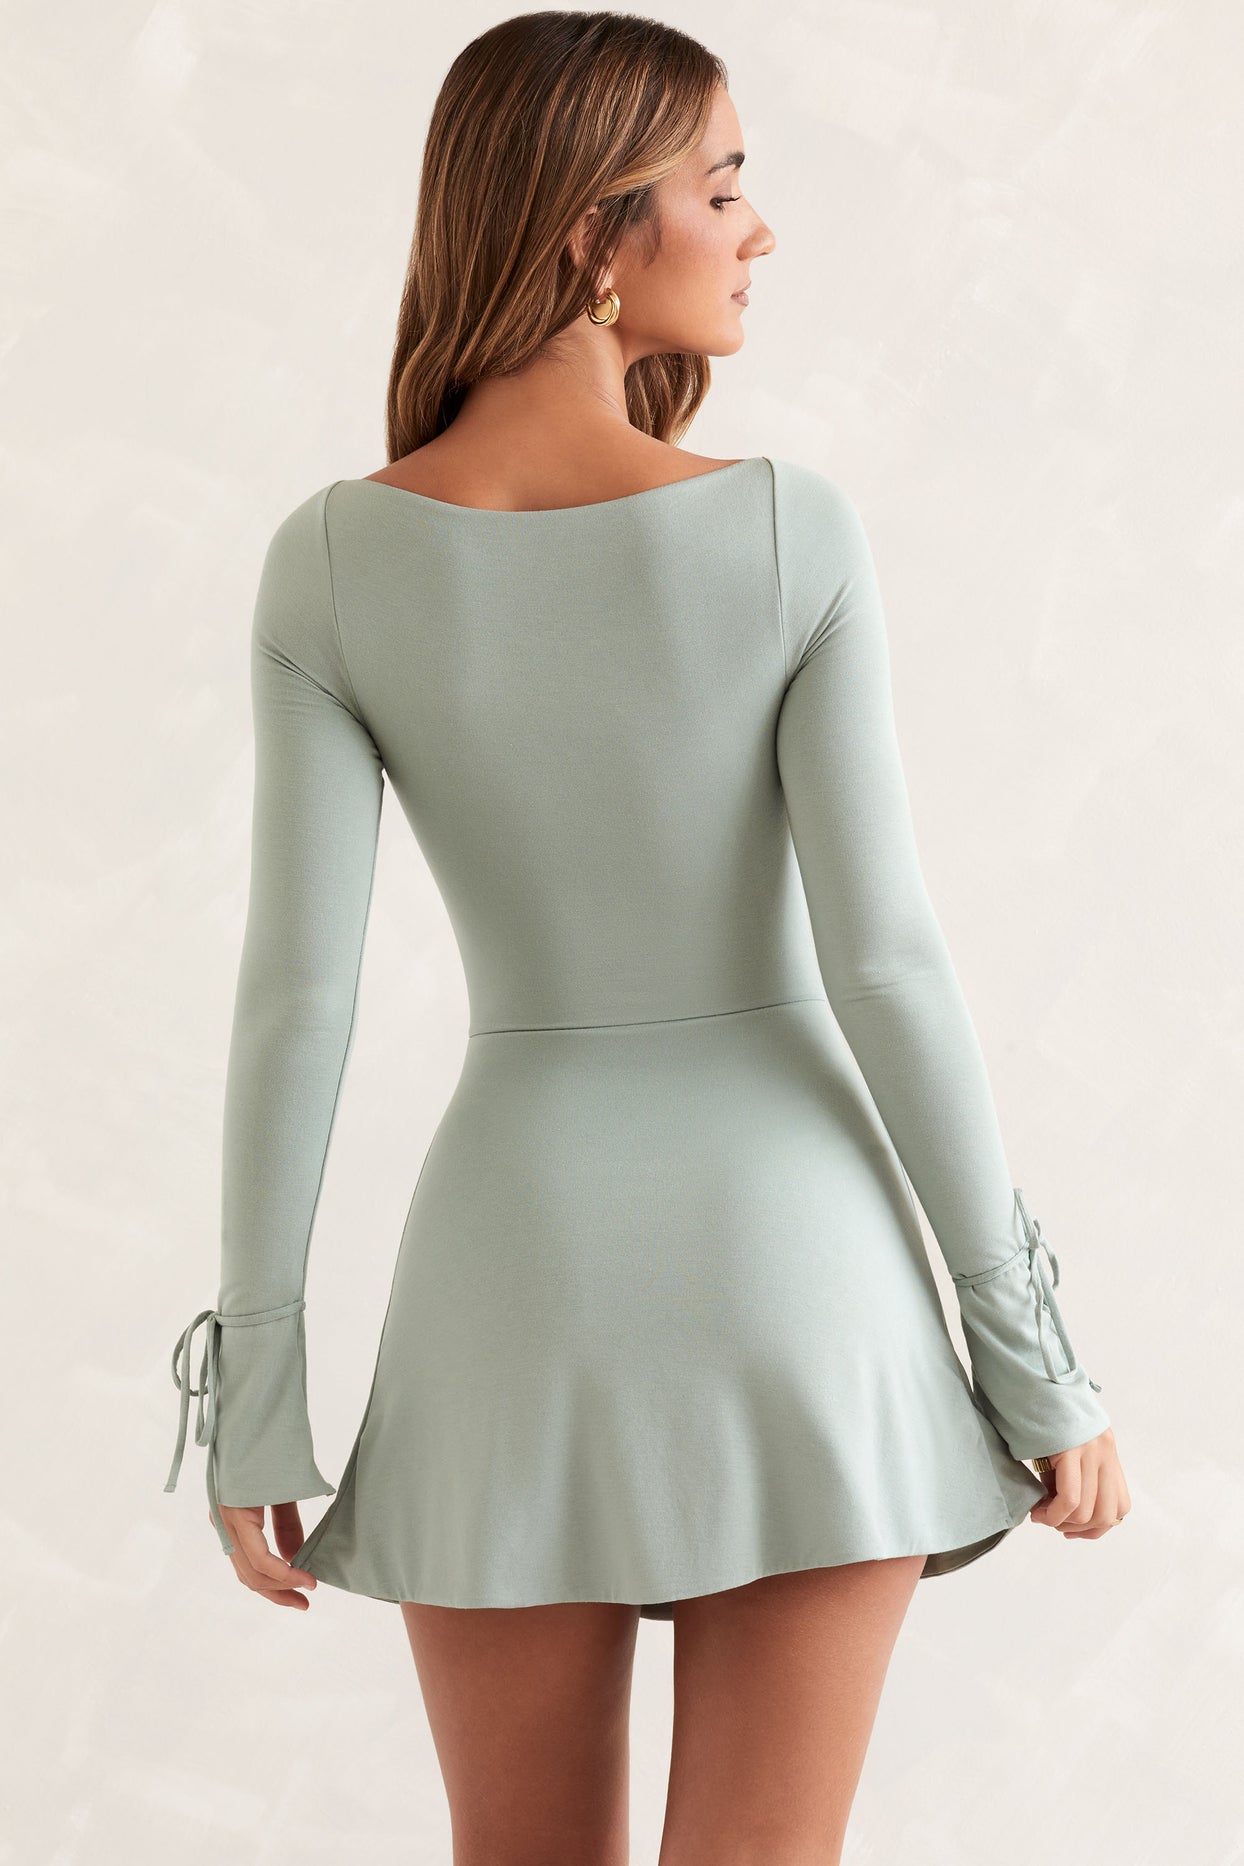 Square Neck Mini Dress Long Sleeve